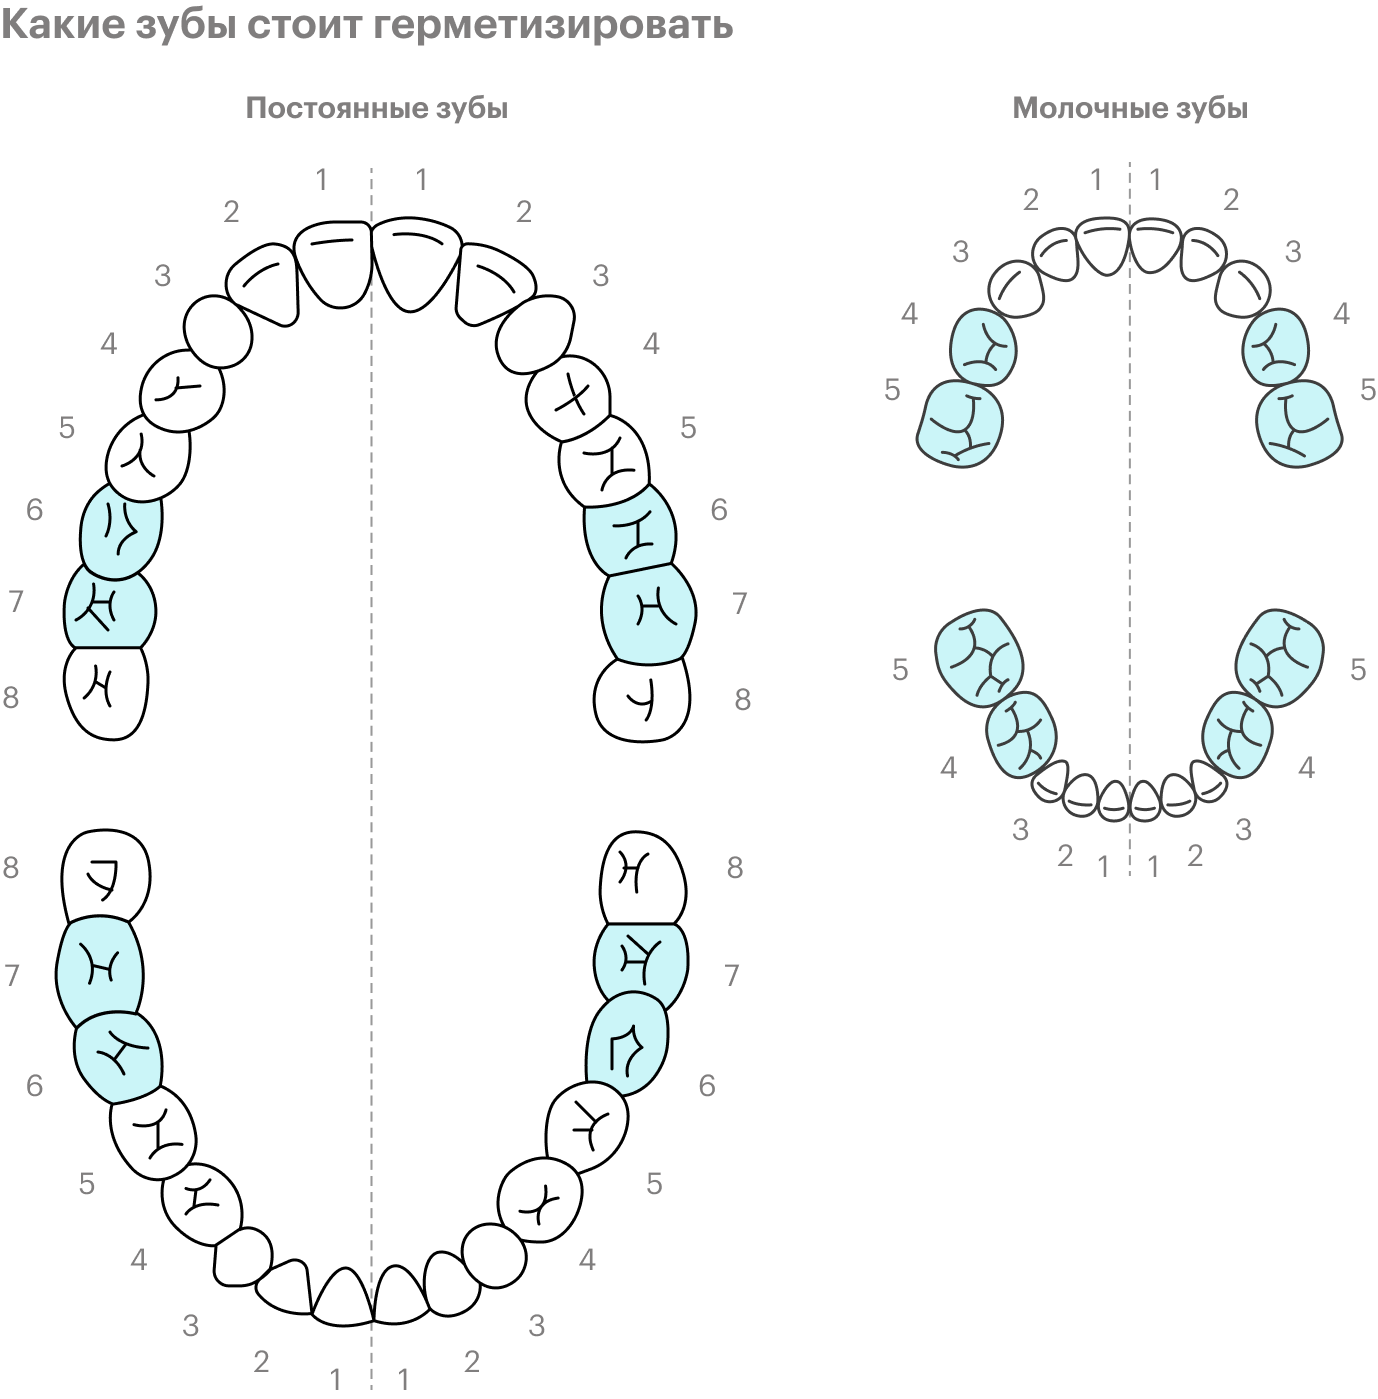 Герметизация обычно нужна постоянным «шестеркам» и «семеркам». Иногда герметизируют и молочные зубы — 5 и 4